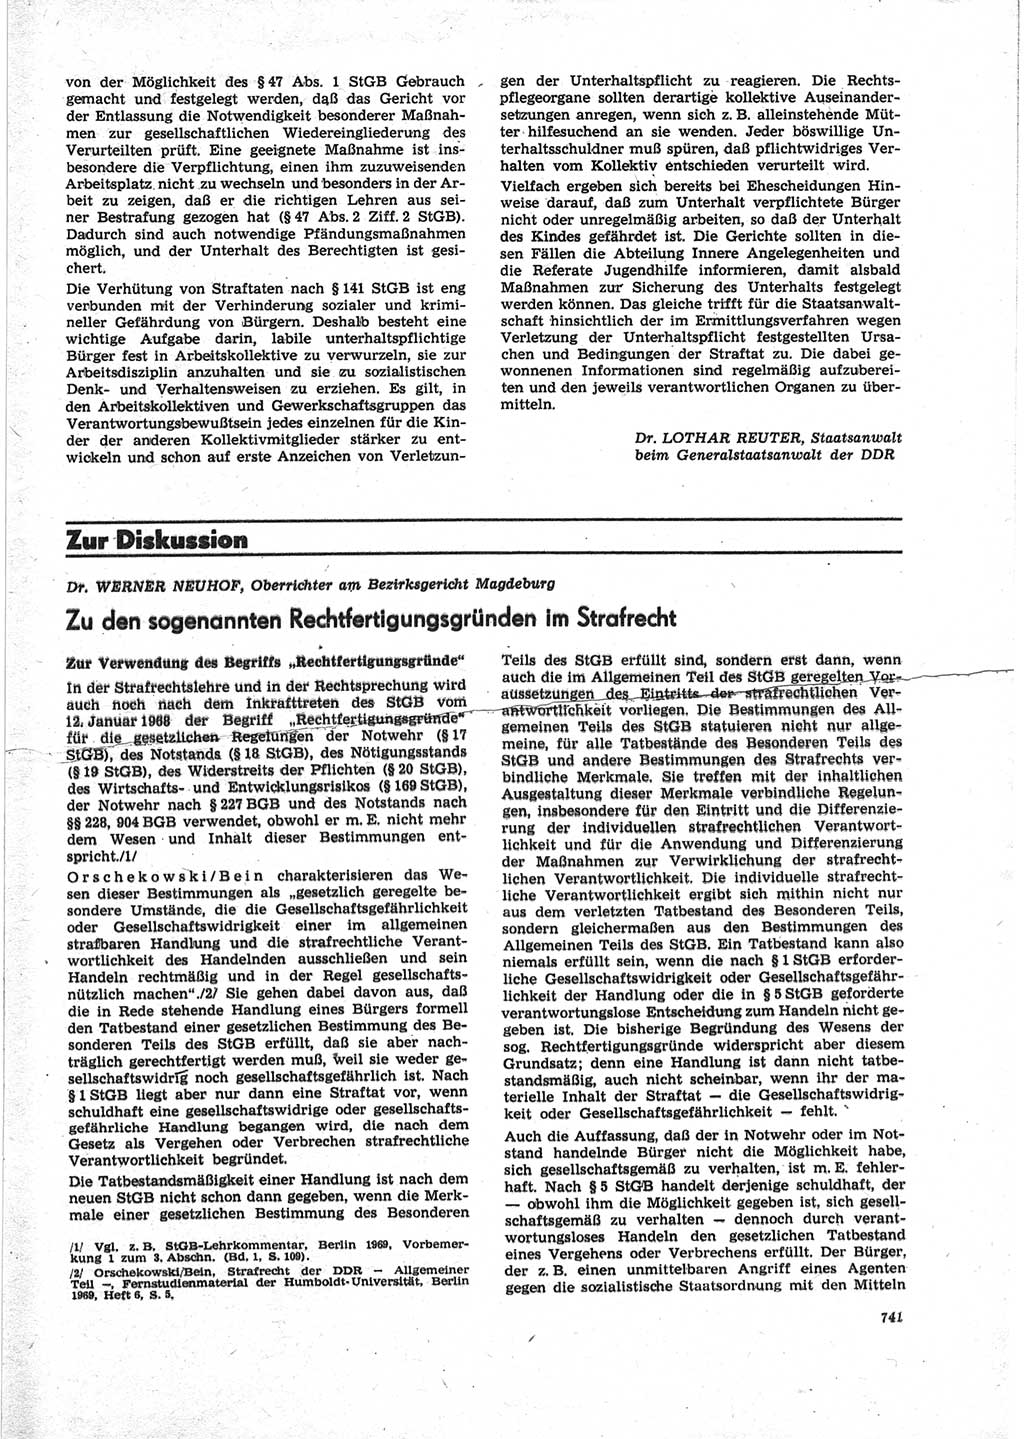 Neue Justiz (NJ), Zeitschrift für Recht und Rechtswissenschaft [Deutsche Demokratische Republik (DDR)], 25. Jahrgang 1971, Seite 741 (NJ DDR 1971, S. 741)